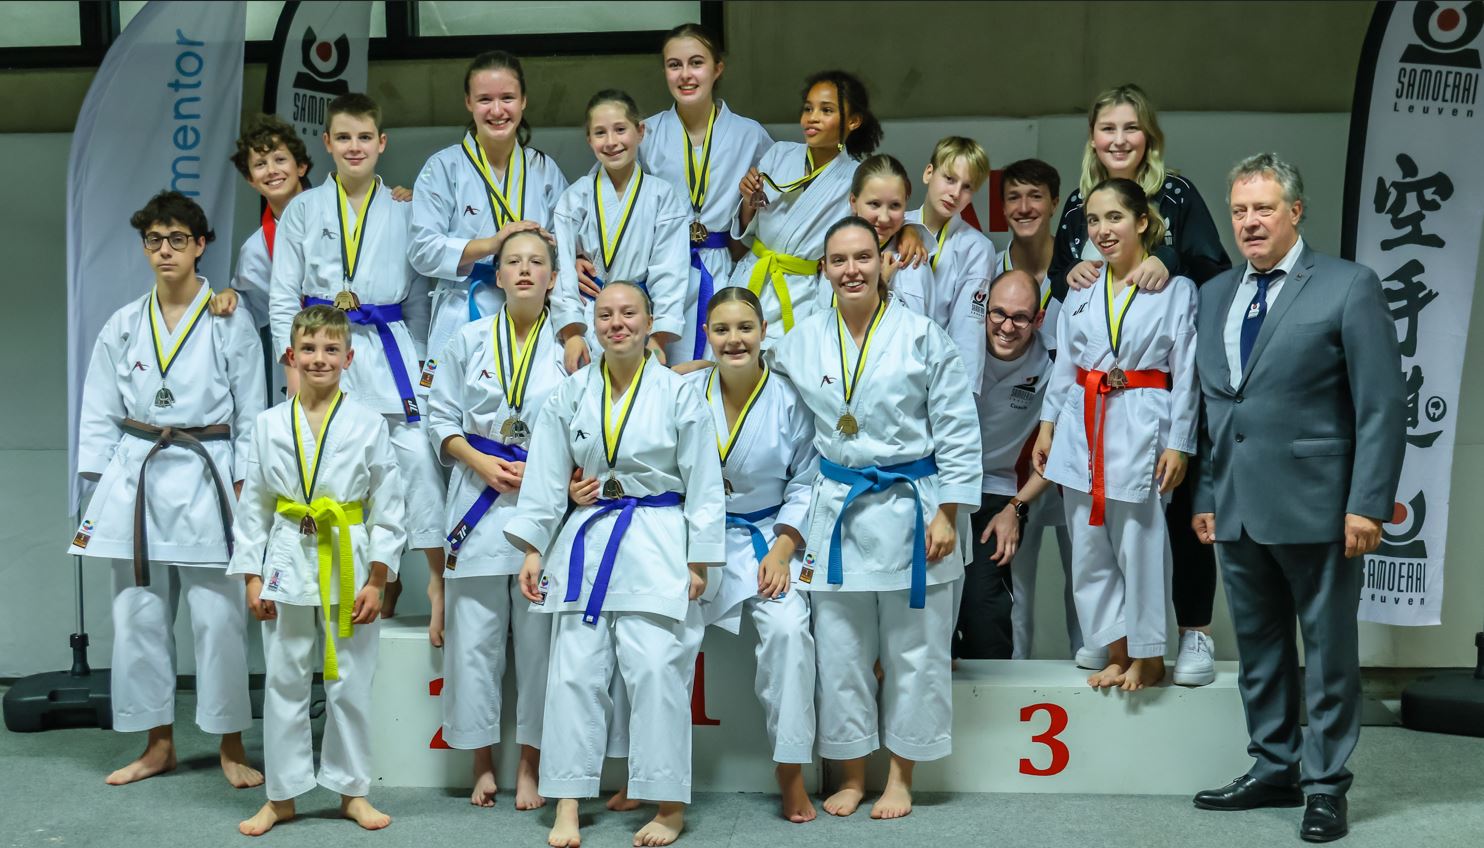 Karateclub Samoerai Leuven scoort op provinciaal kampioenschap als organisator en met 50 podiumplaatsen